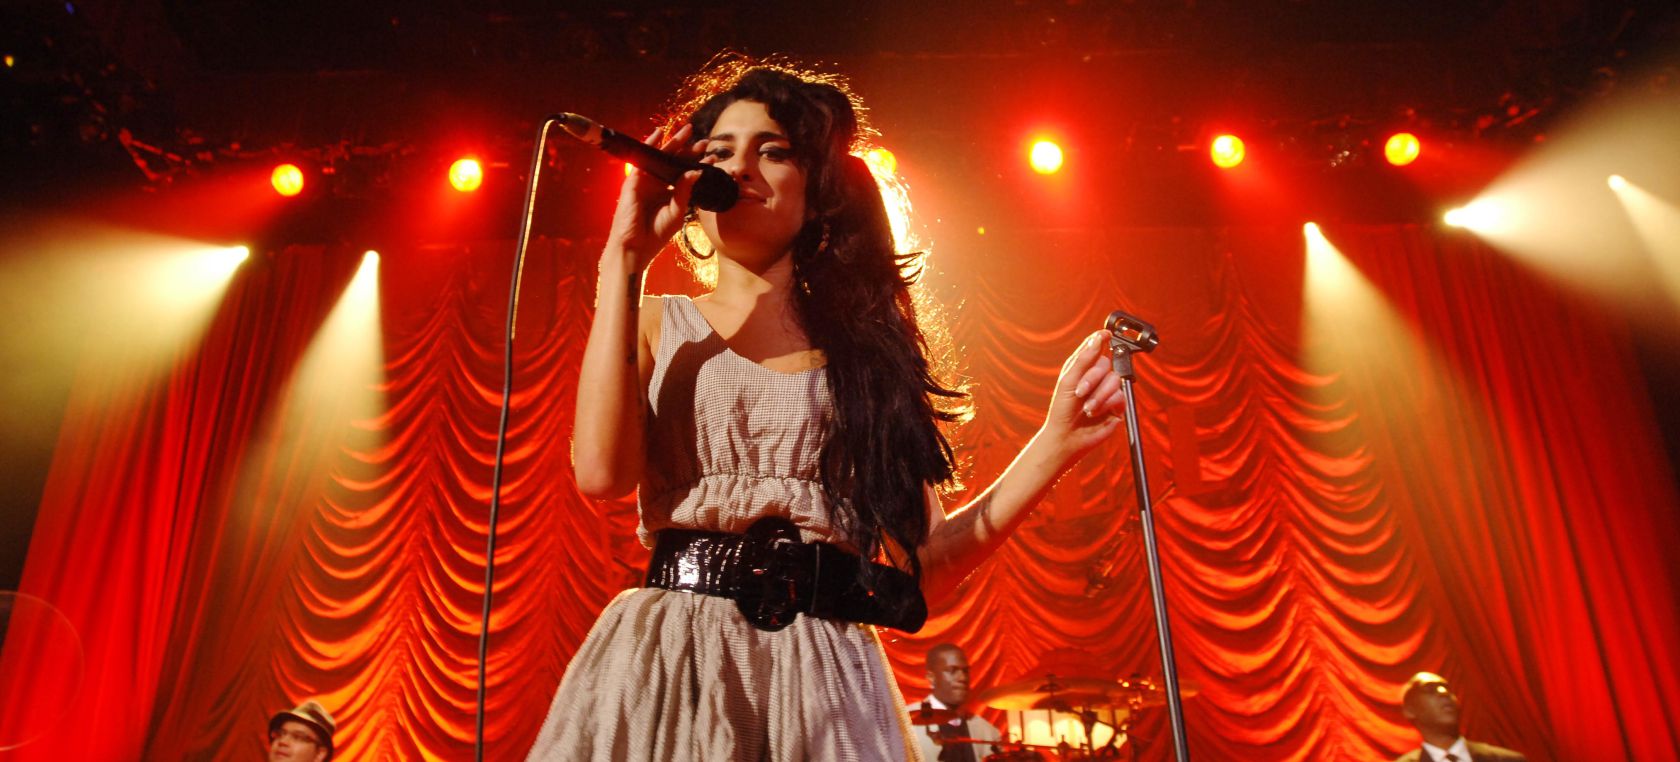 Amy Winehouse y su directo más emotivo llegan a las plataformas digitales